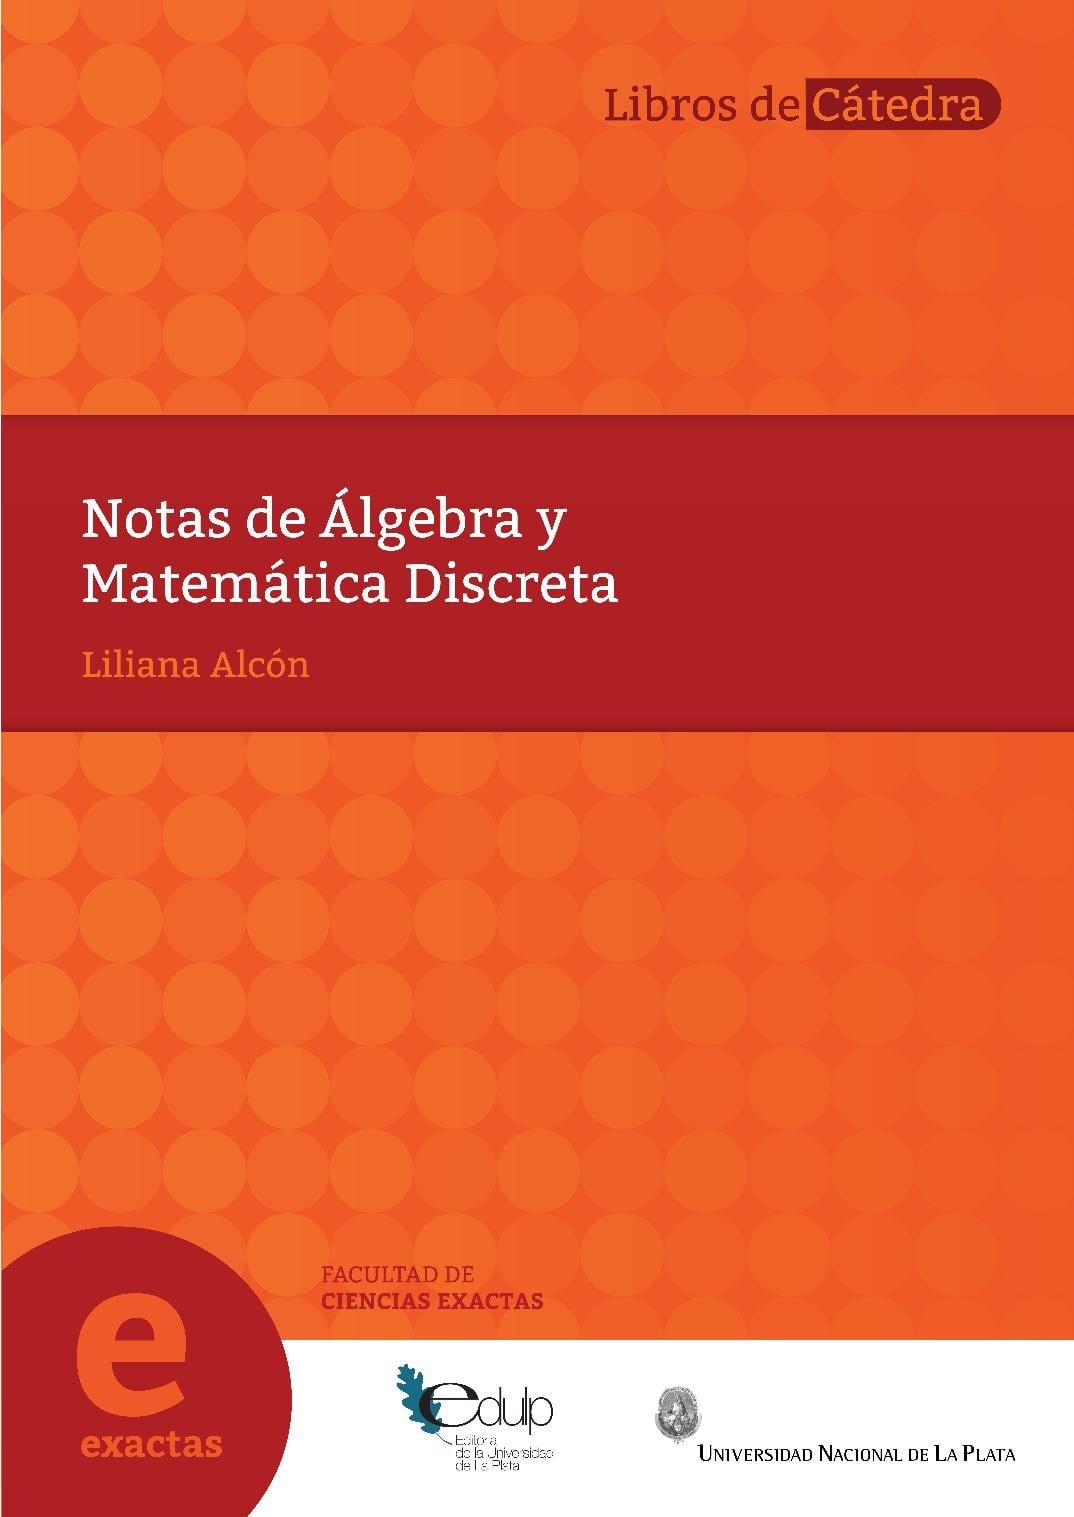 Notas de Álgebra y Matemática Discreta 1 Edición Liliana Alcón PDF